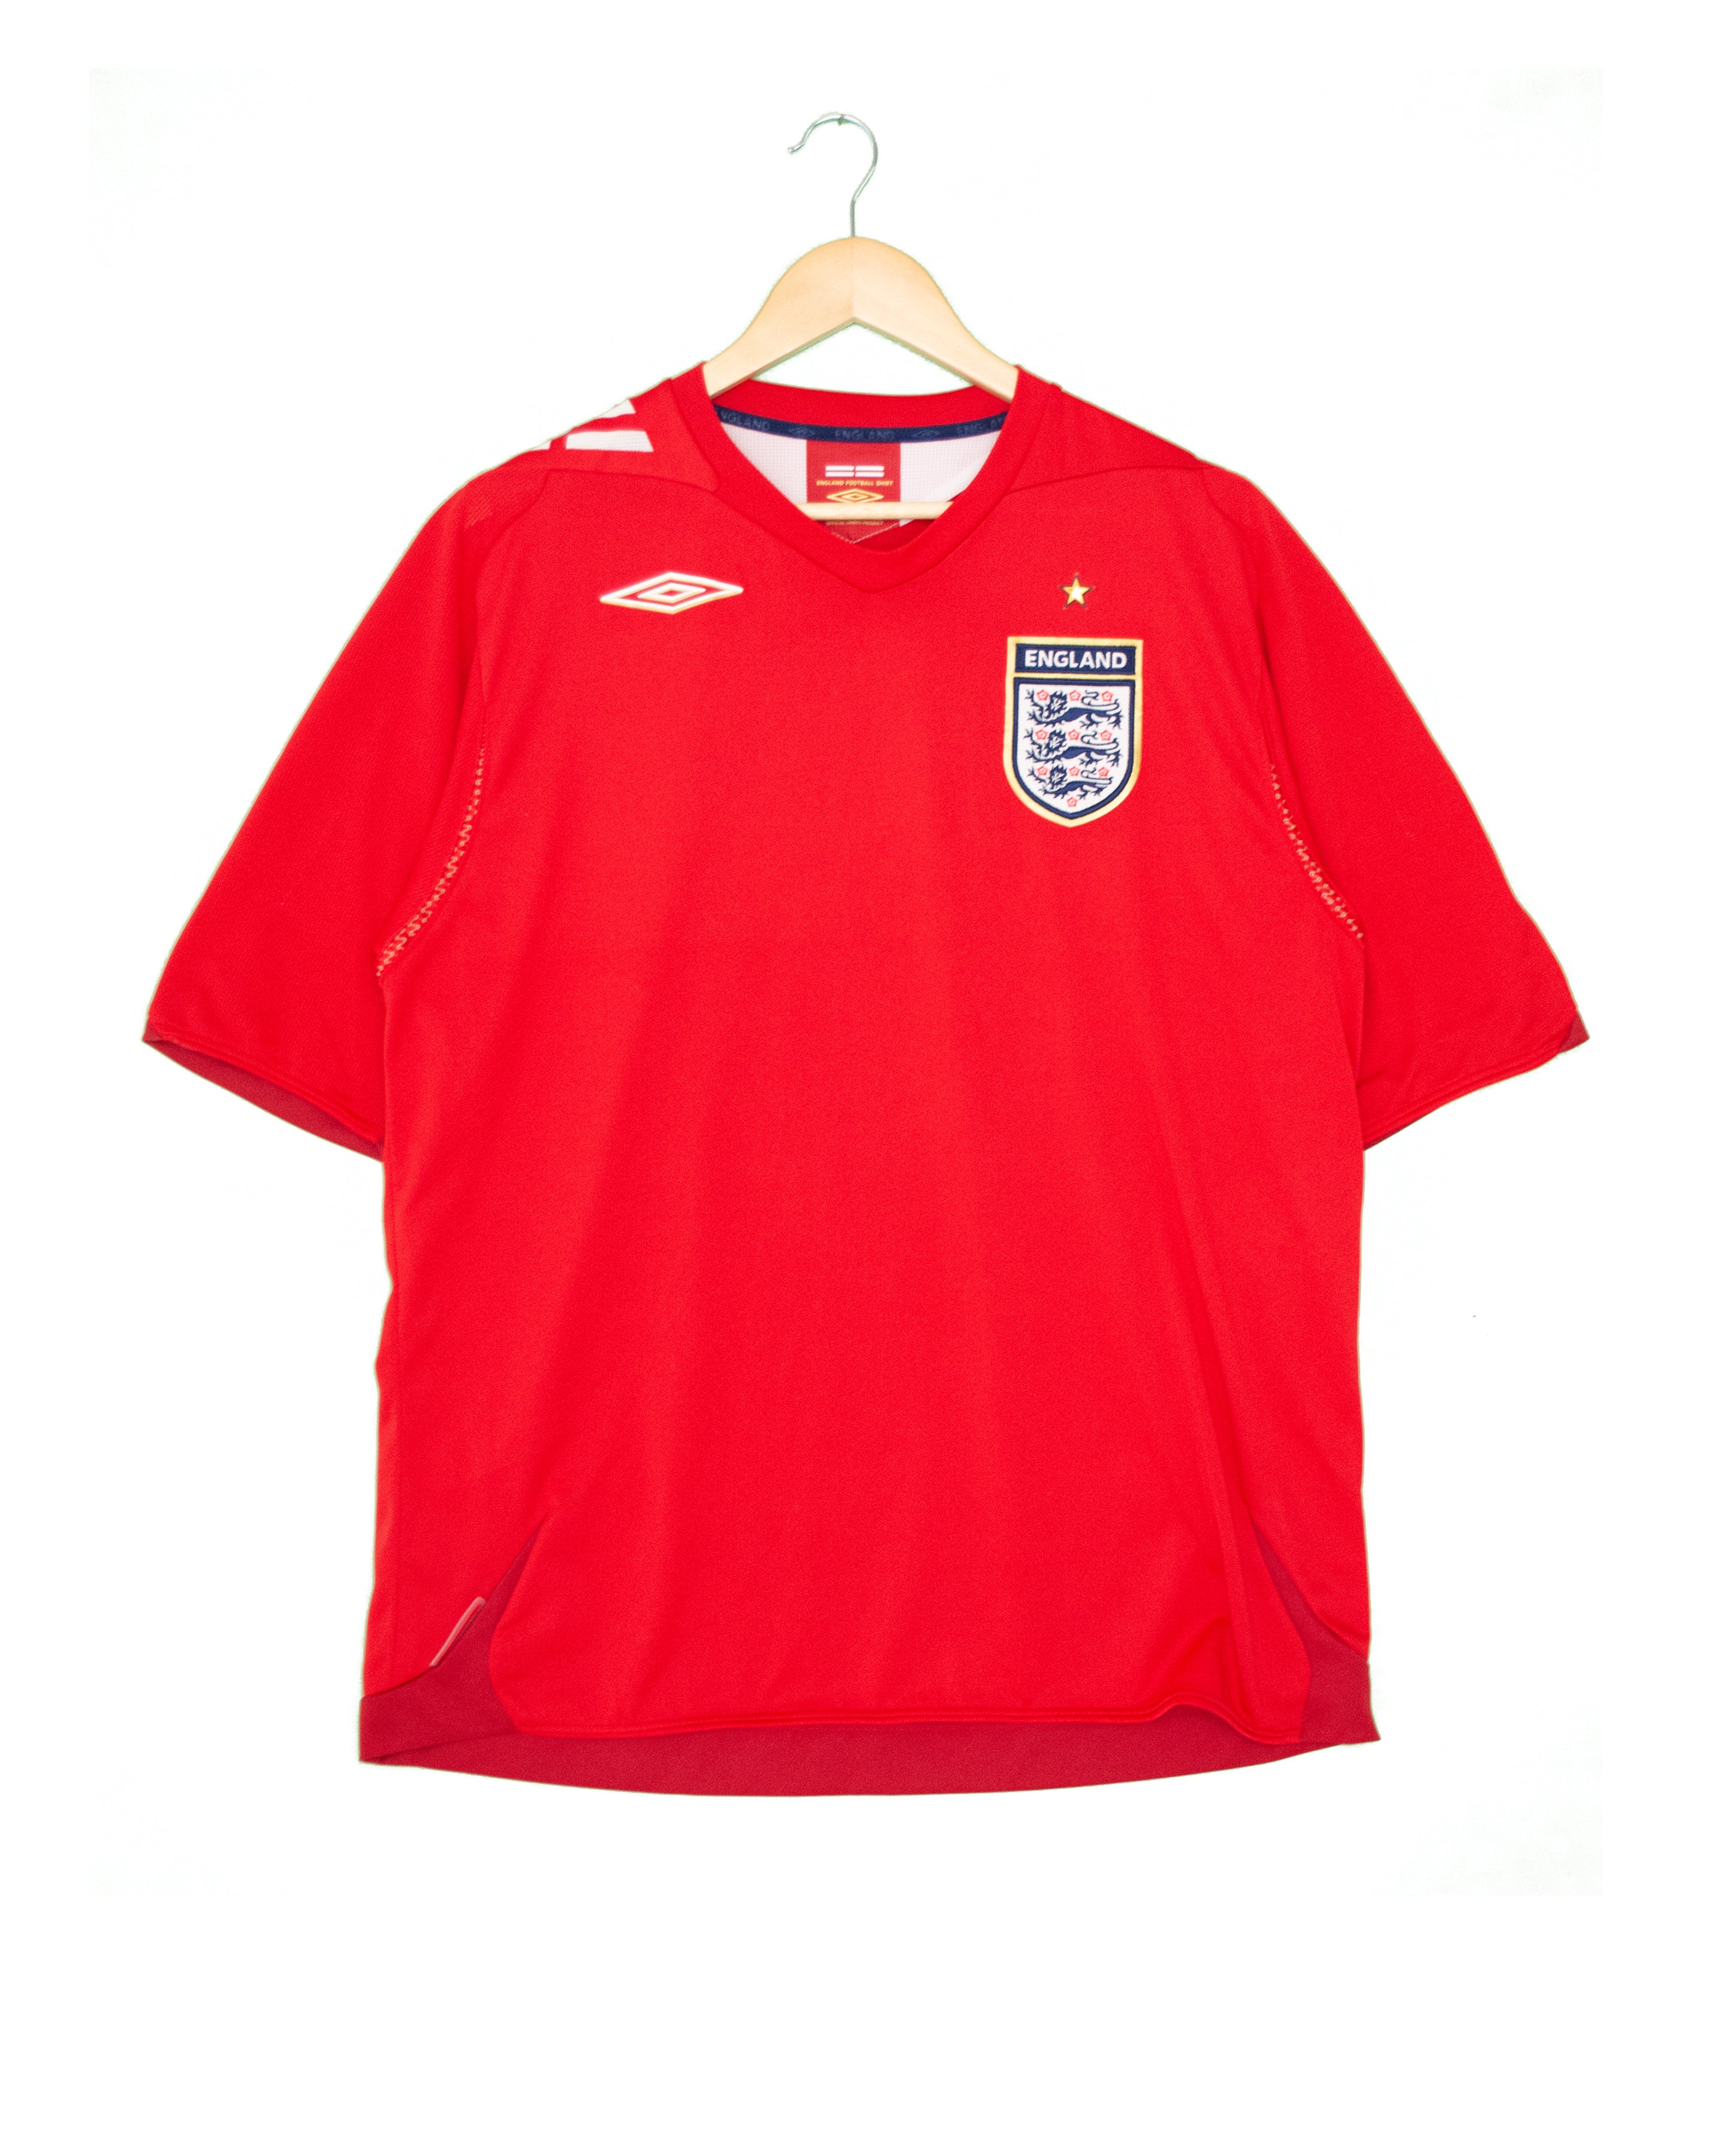 England 2006 Away Shirt - XL - #1563